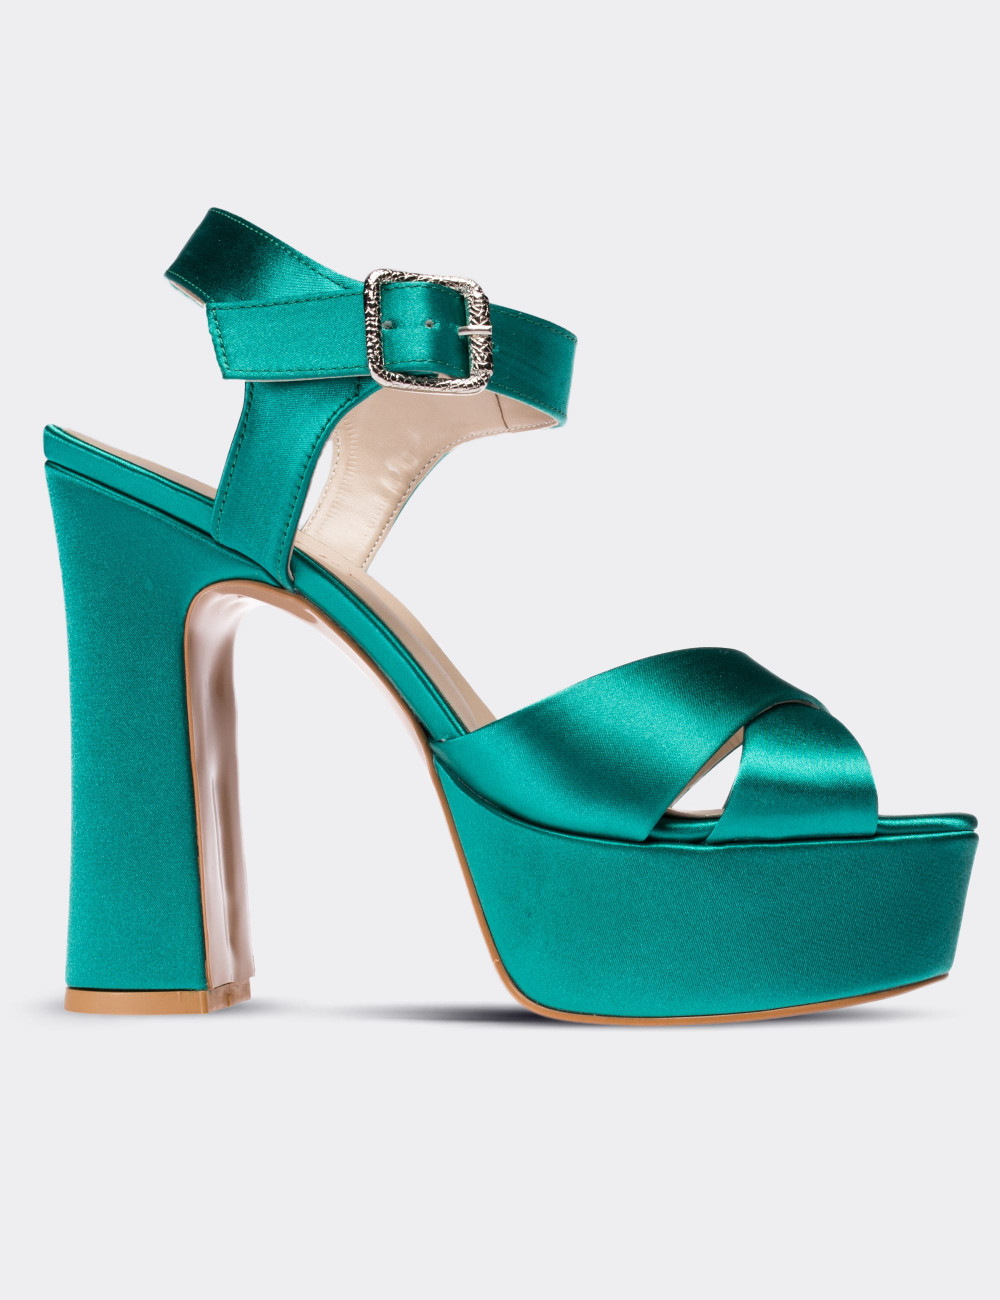 Yeşil Saten Abiye Topuklu Kadın Ayakkabı - C0700ZYSLM01